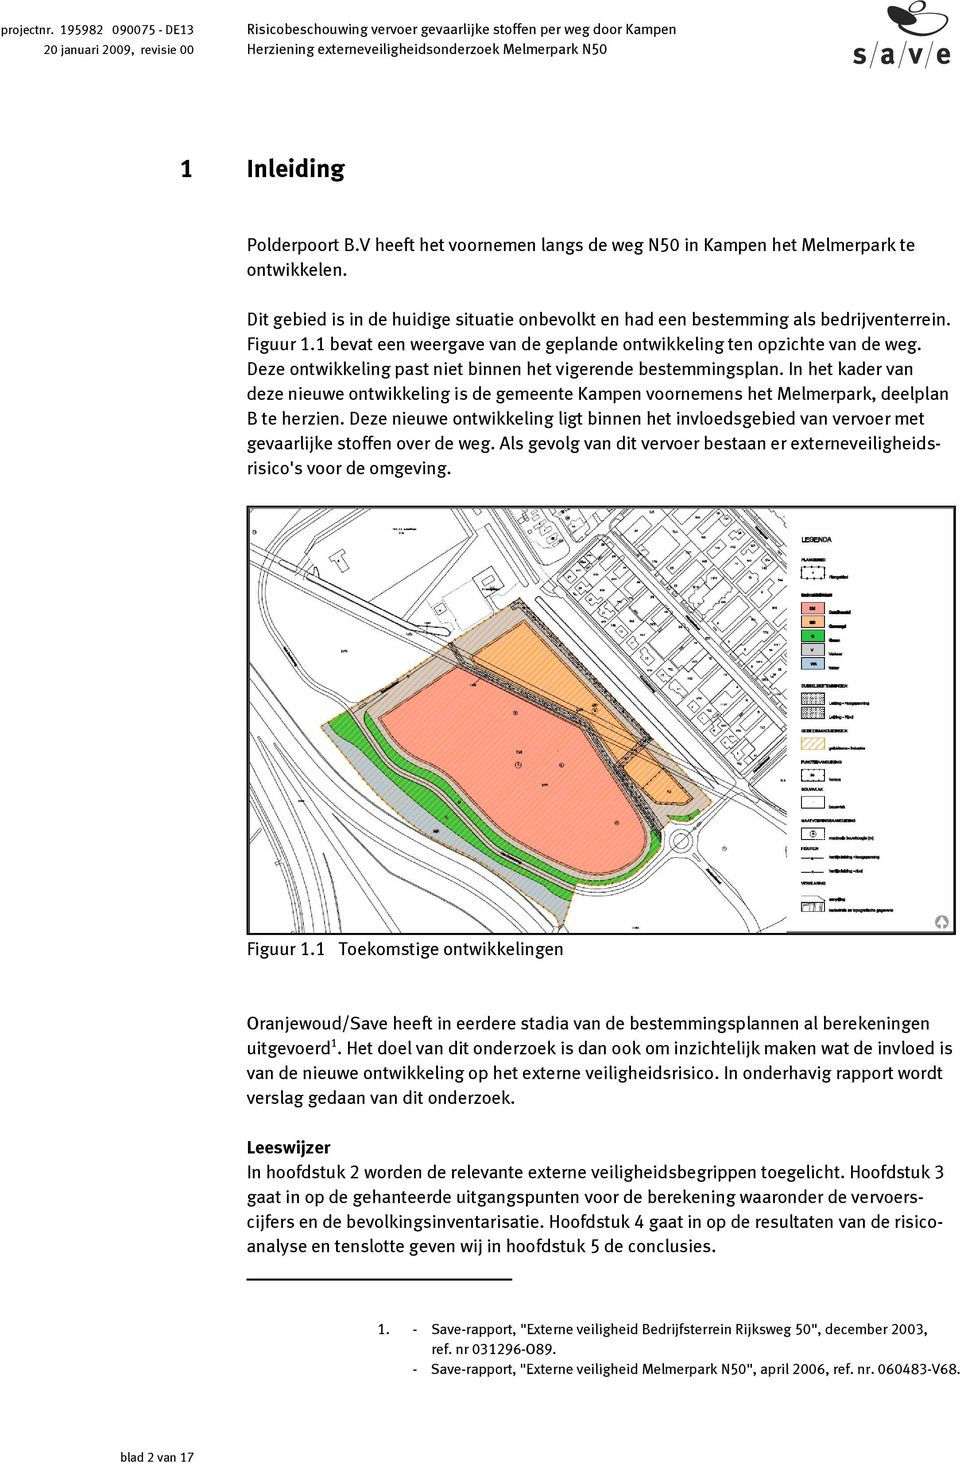 In het kader van deze nieuwe ontwikkeling is de gemeente Kampen voornemens het Melmerpark, deelplan B te herzien.